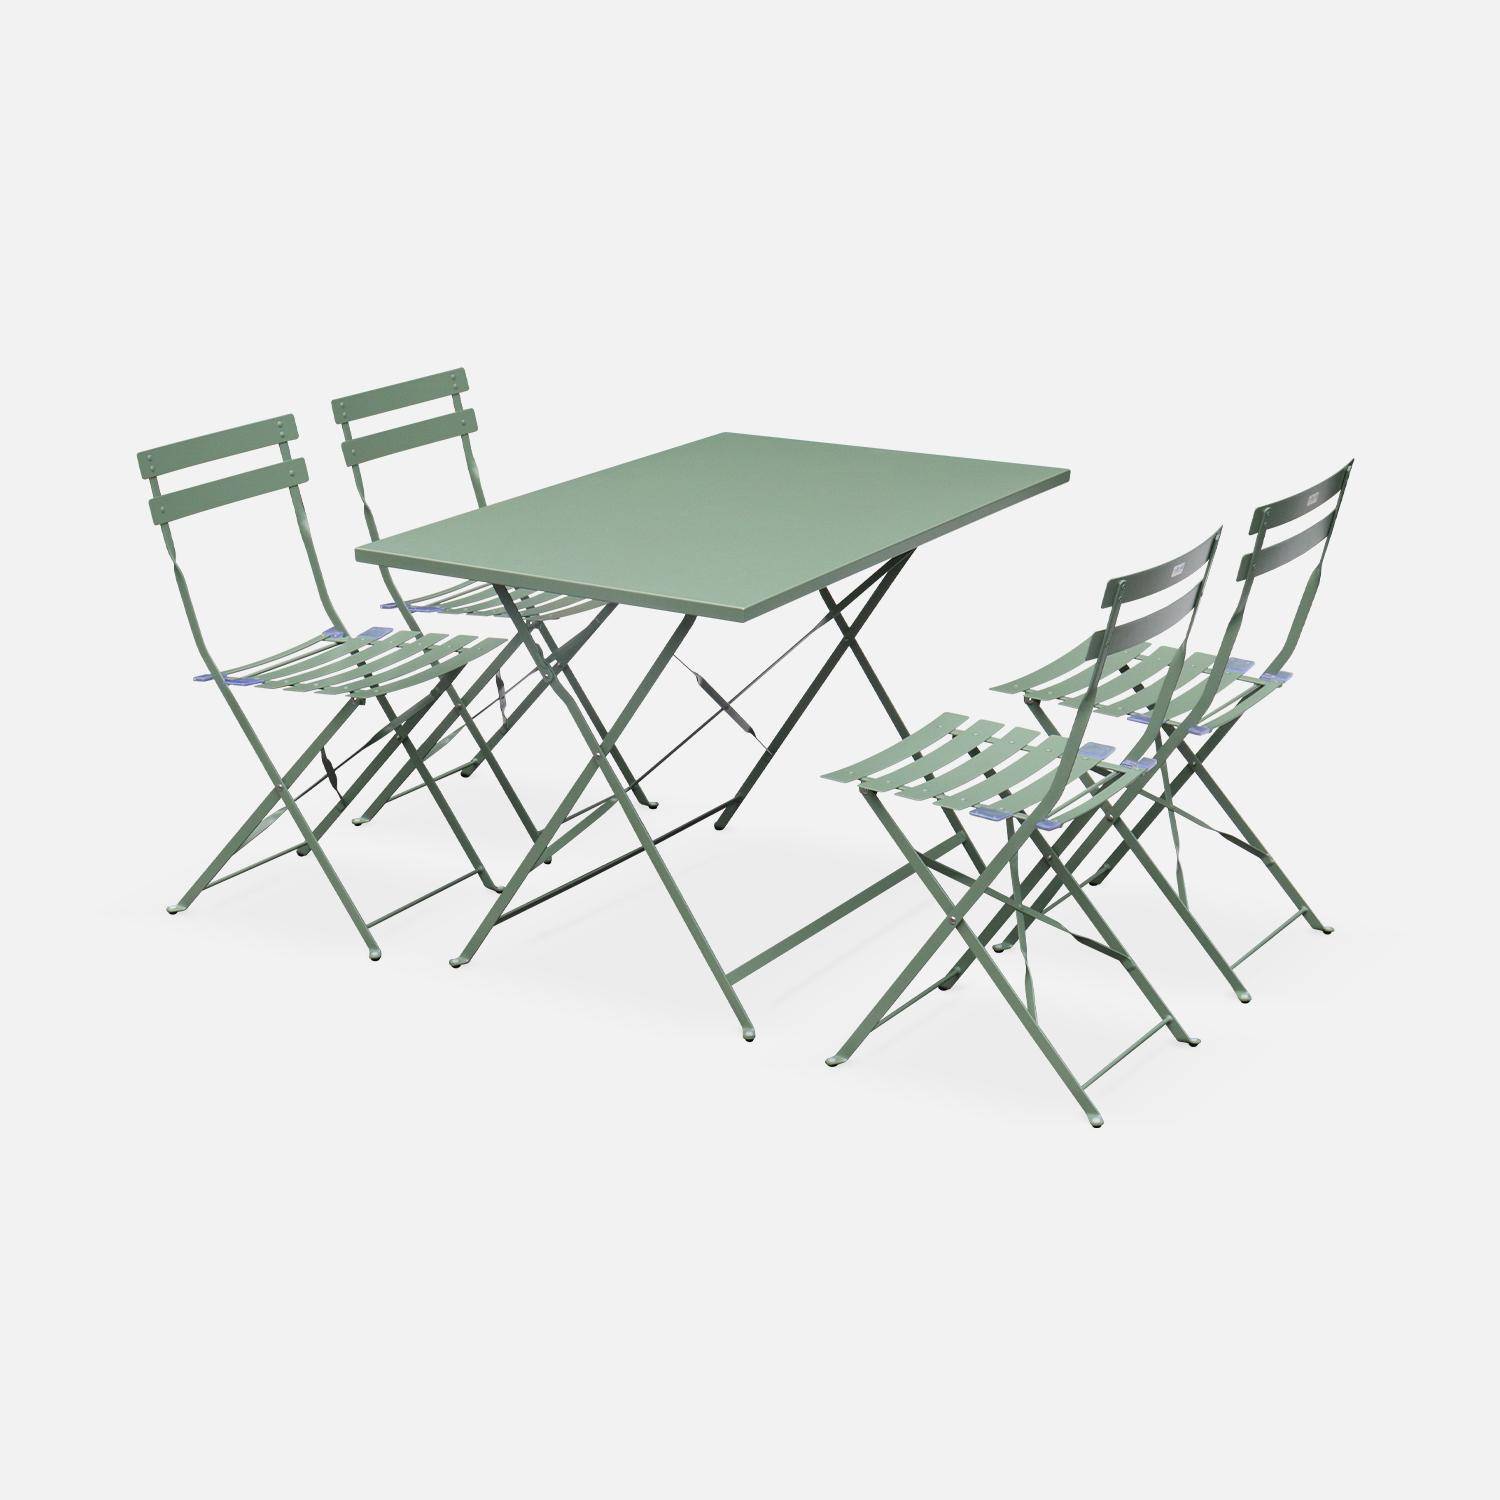 Tavolo da giardino, bar bistrot, pieghevole - modello: Emilia, rettangolare, colore: Grigio verde - Tavolo, dimensioni: 110x70cm, con quattro sedie pieghevoli, acciaio termolaccato,sweeek,Photo2